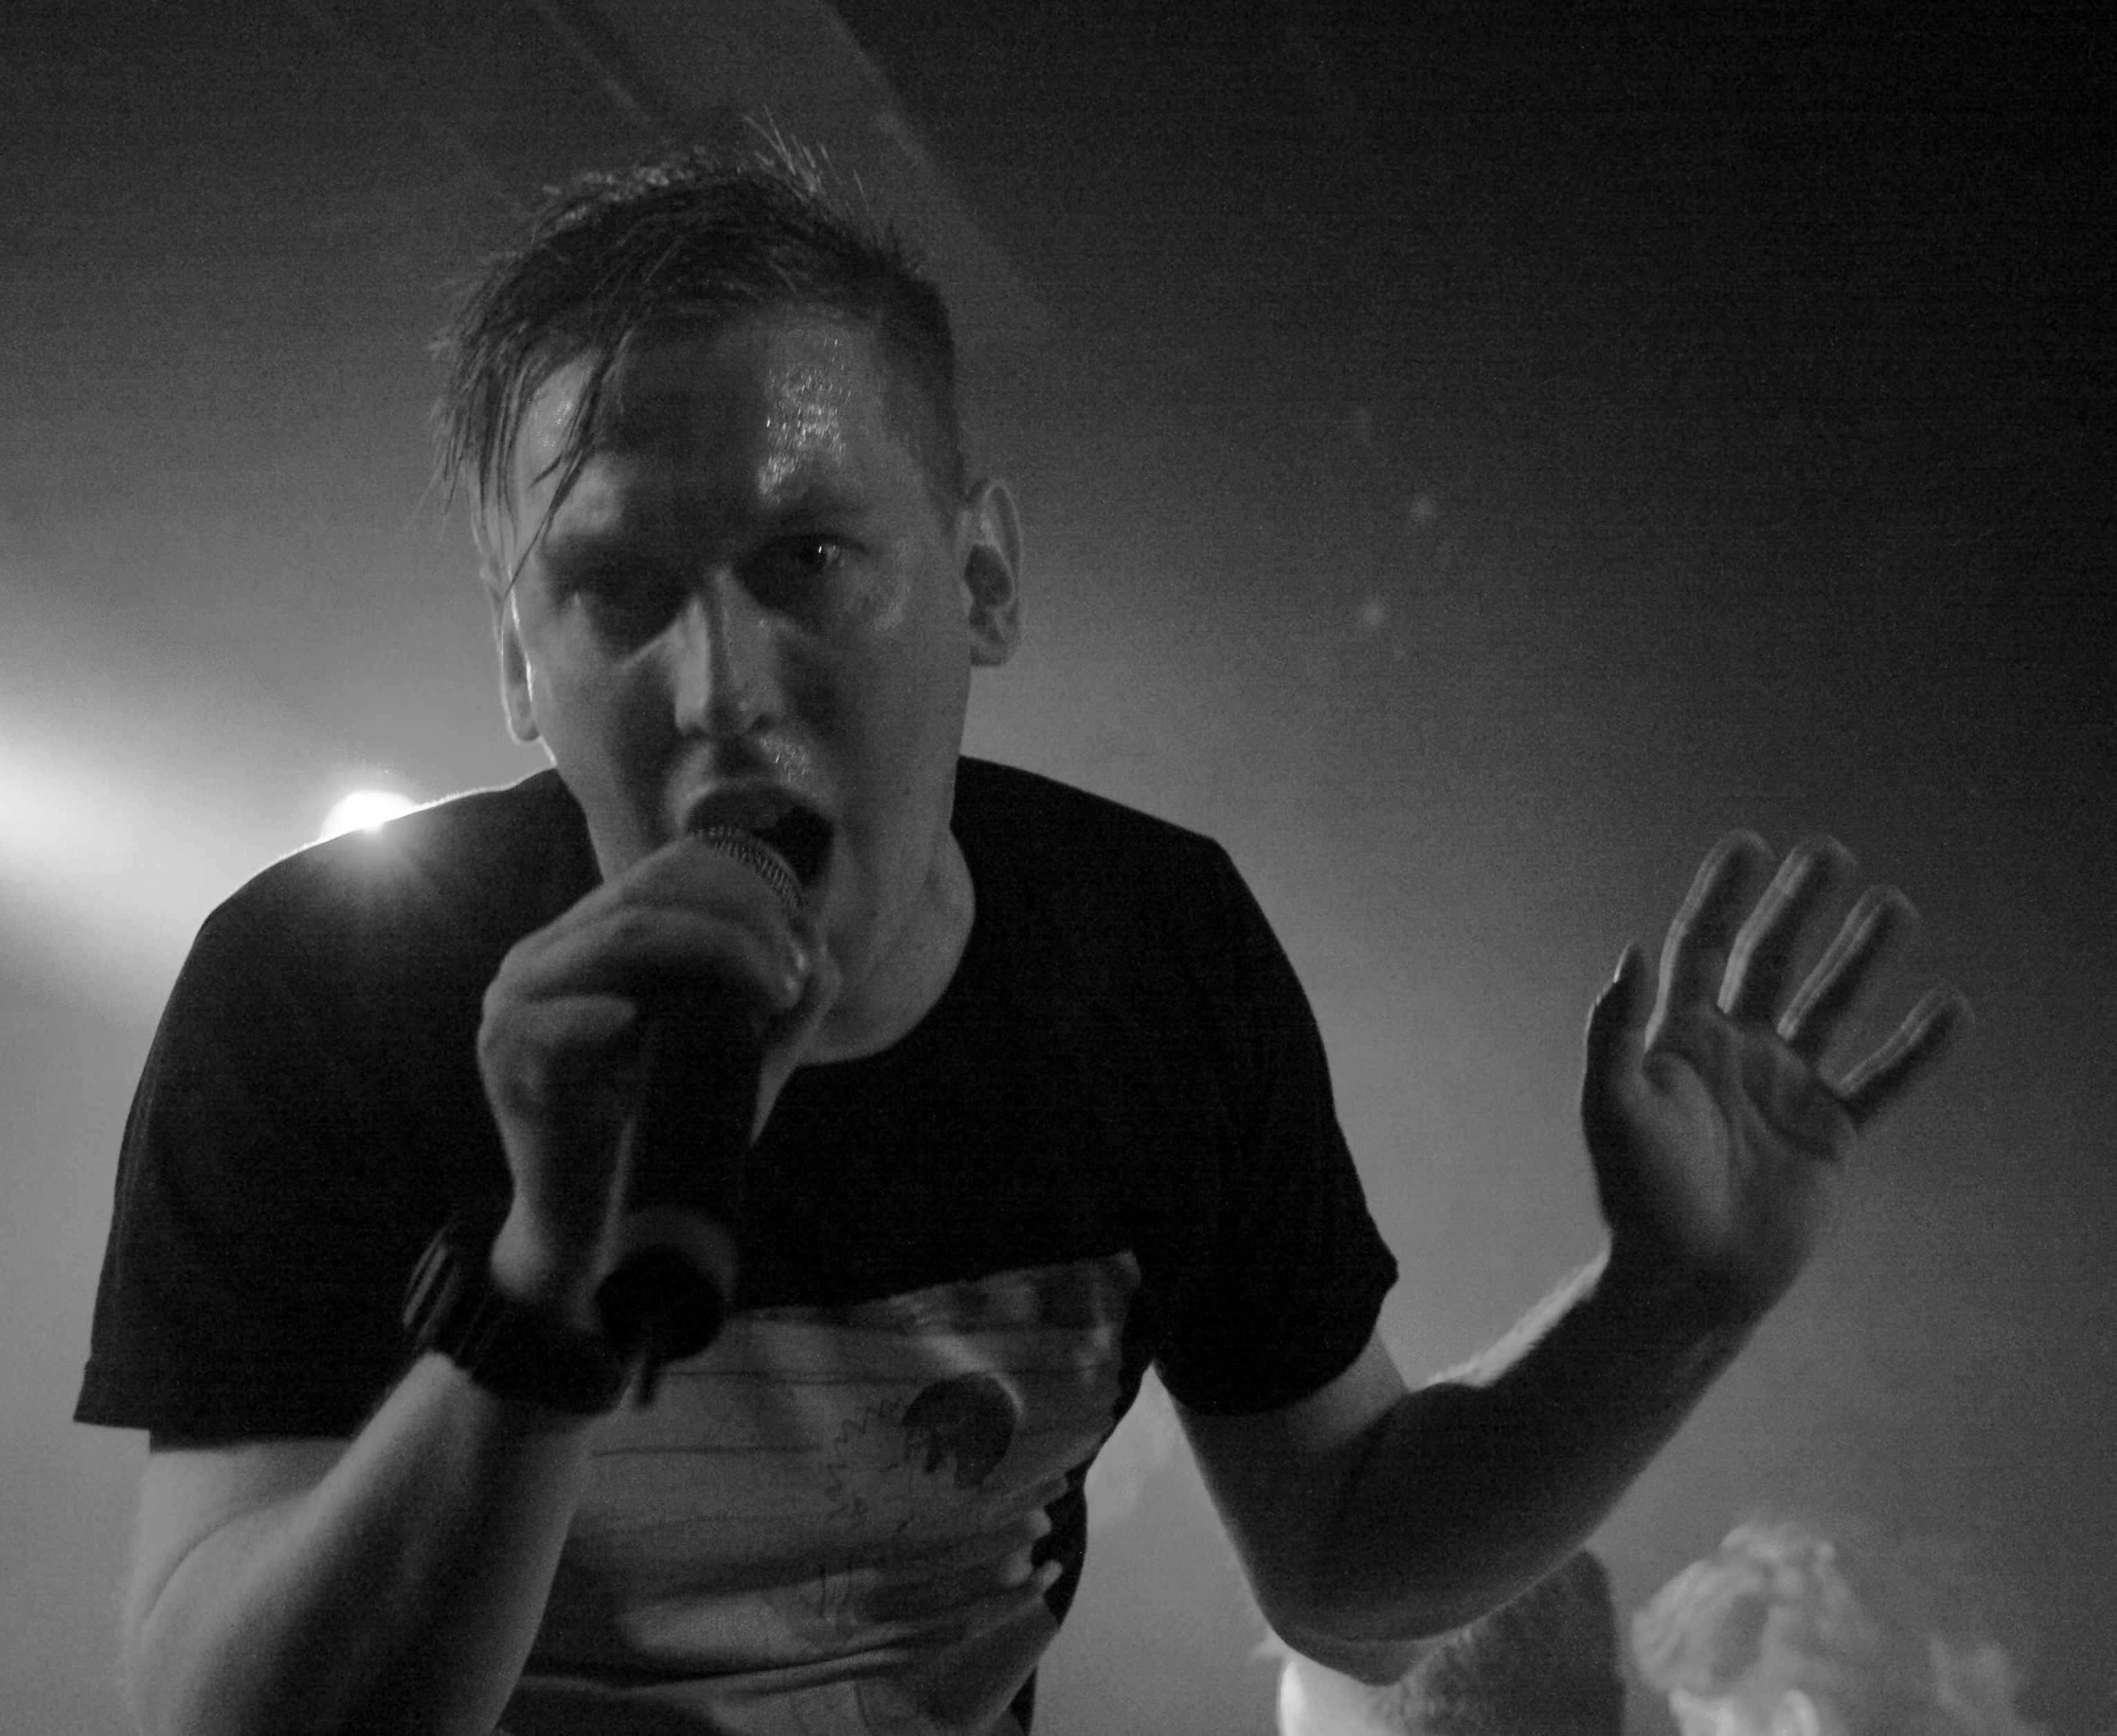 Zugezogen Maskulin – Zwei Berliner auf "Endlich Wieder Krieg"-Tour. – Grim sorgte schon solo mit seiner selbstbetitelten EP für Aufmerksamkeit.